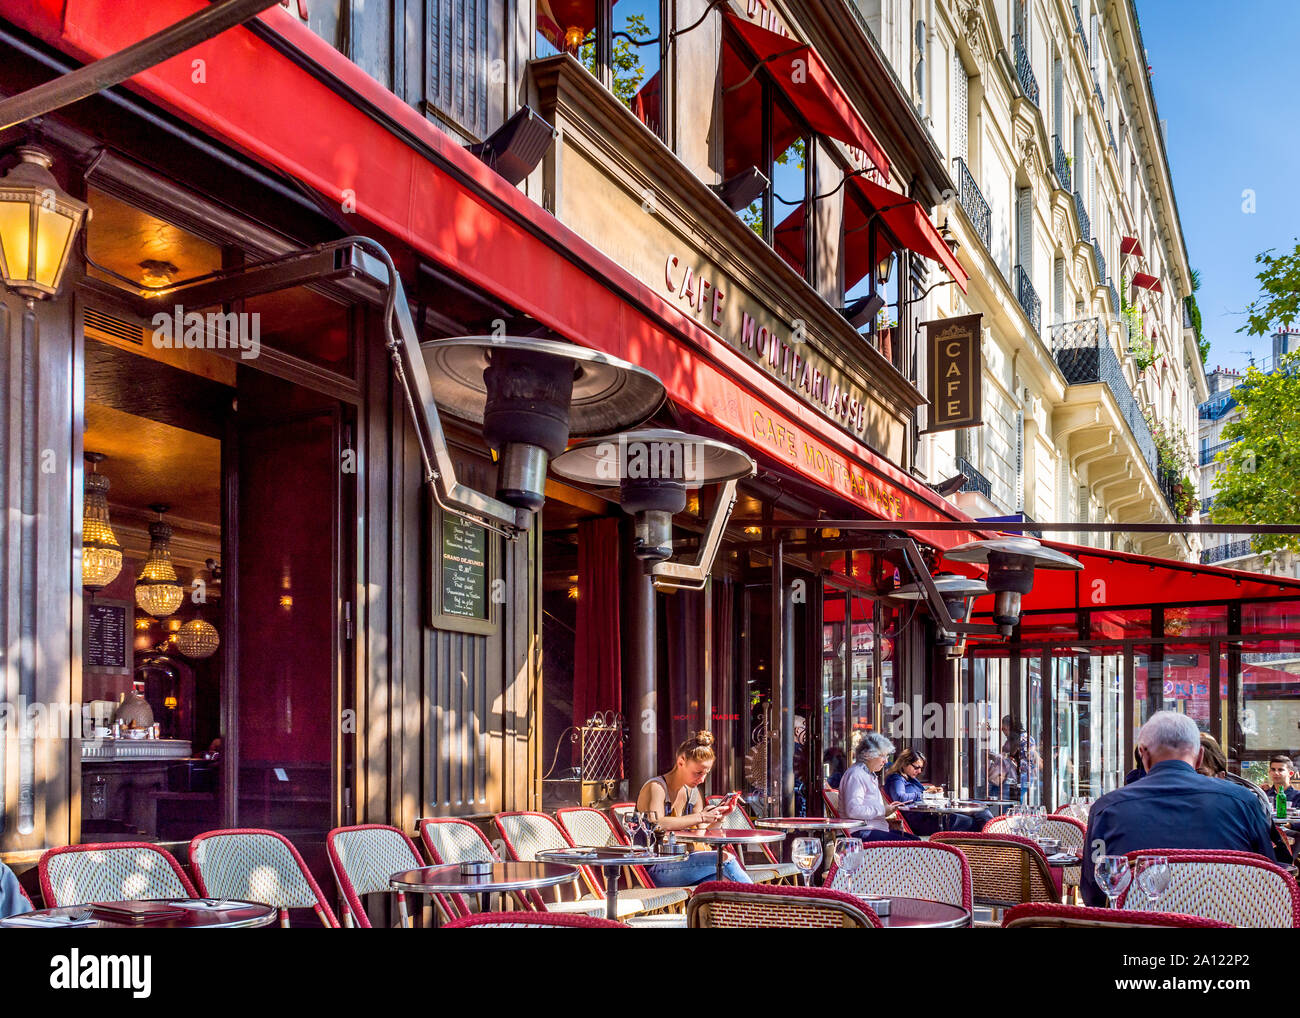 Frontage of Café Montparnasse, Paris, France. Stock Photo